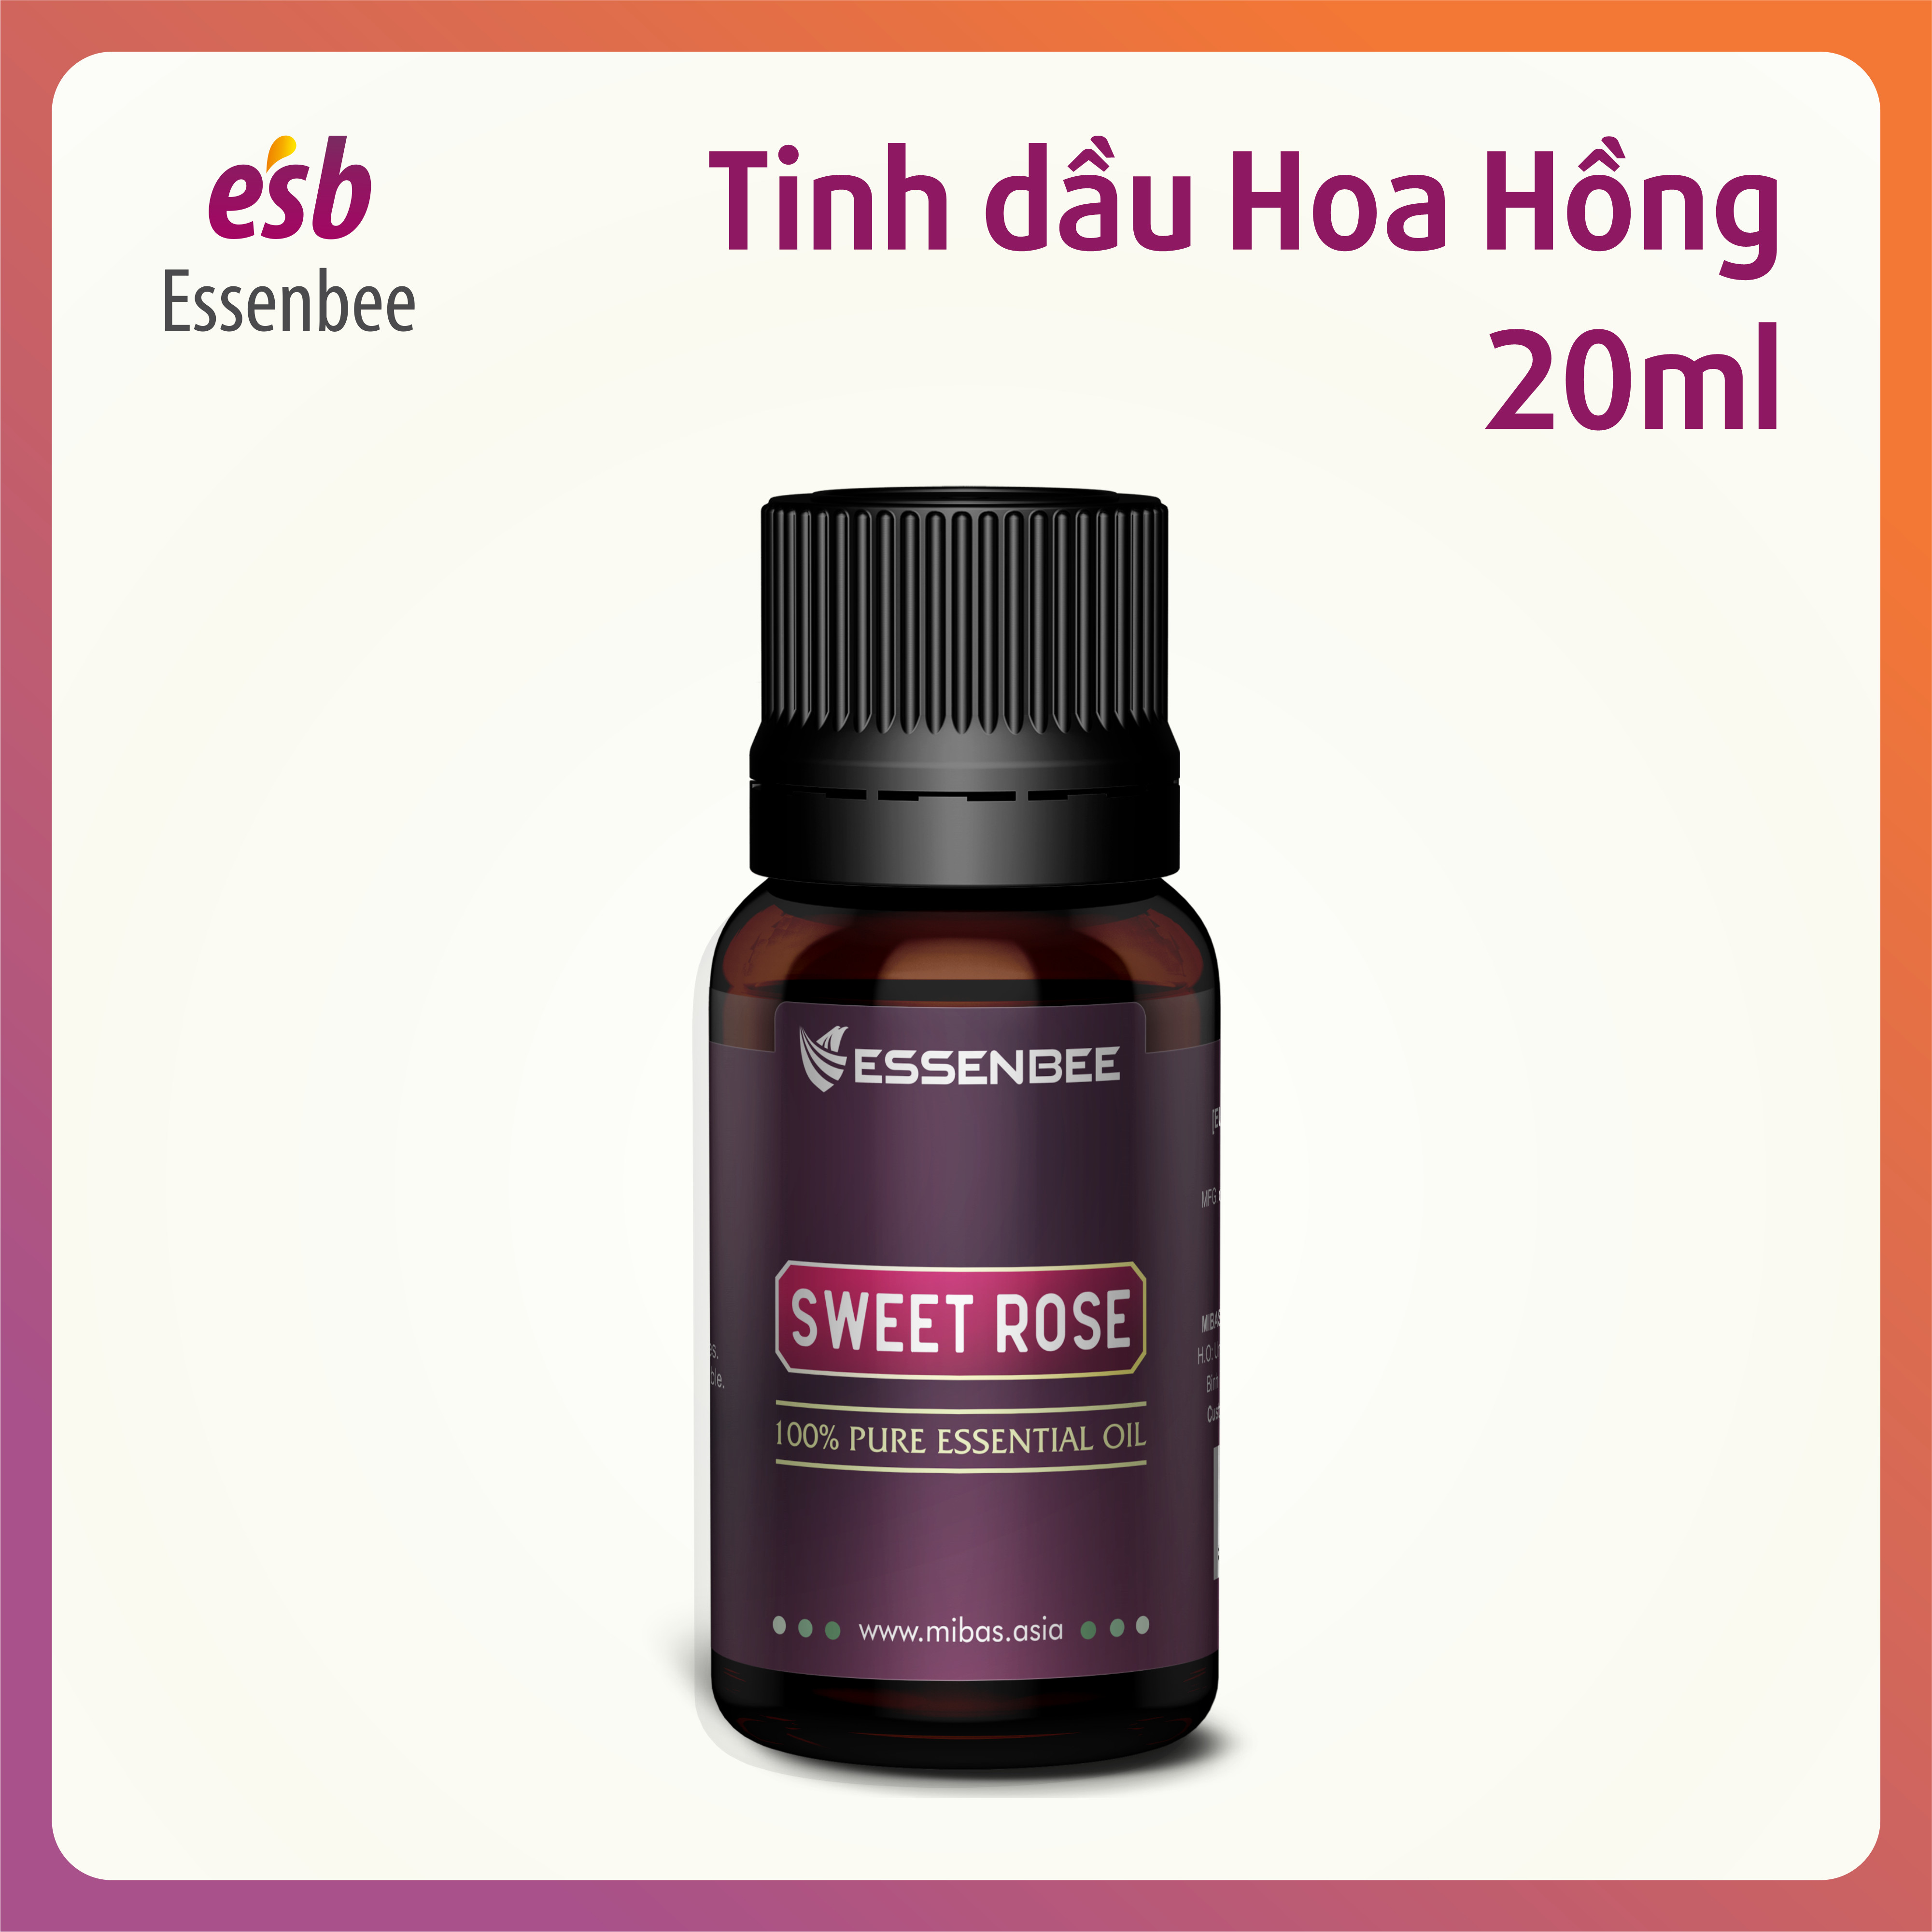 Tinh dầu thiên nhiên Hoa Hồng - Essenbee - 20ml - Giải tỏa căng thẳng, thư giãn tinh thần, giảm stress. Dưỡng ẩm cho da, làm mờ vết thâm và hỗ trợ điều trị quầng thâm mắt. Khử mùi và tạo bầu không khí trong lành.